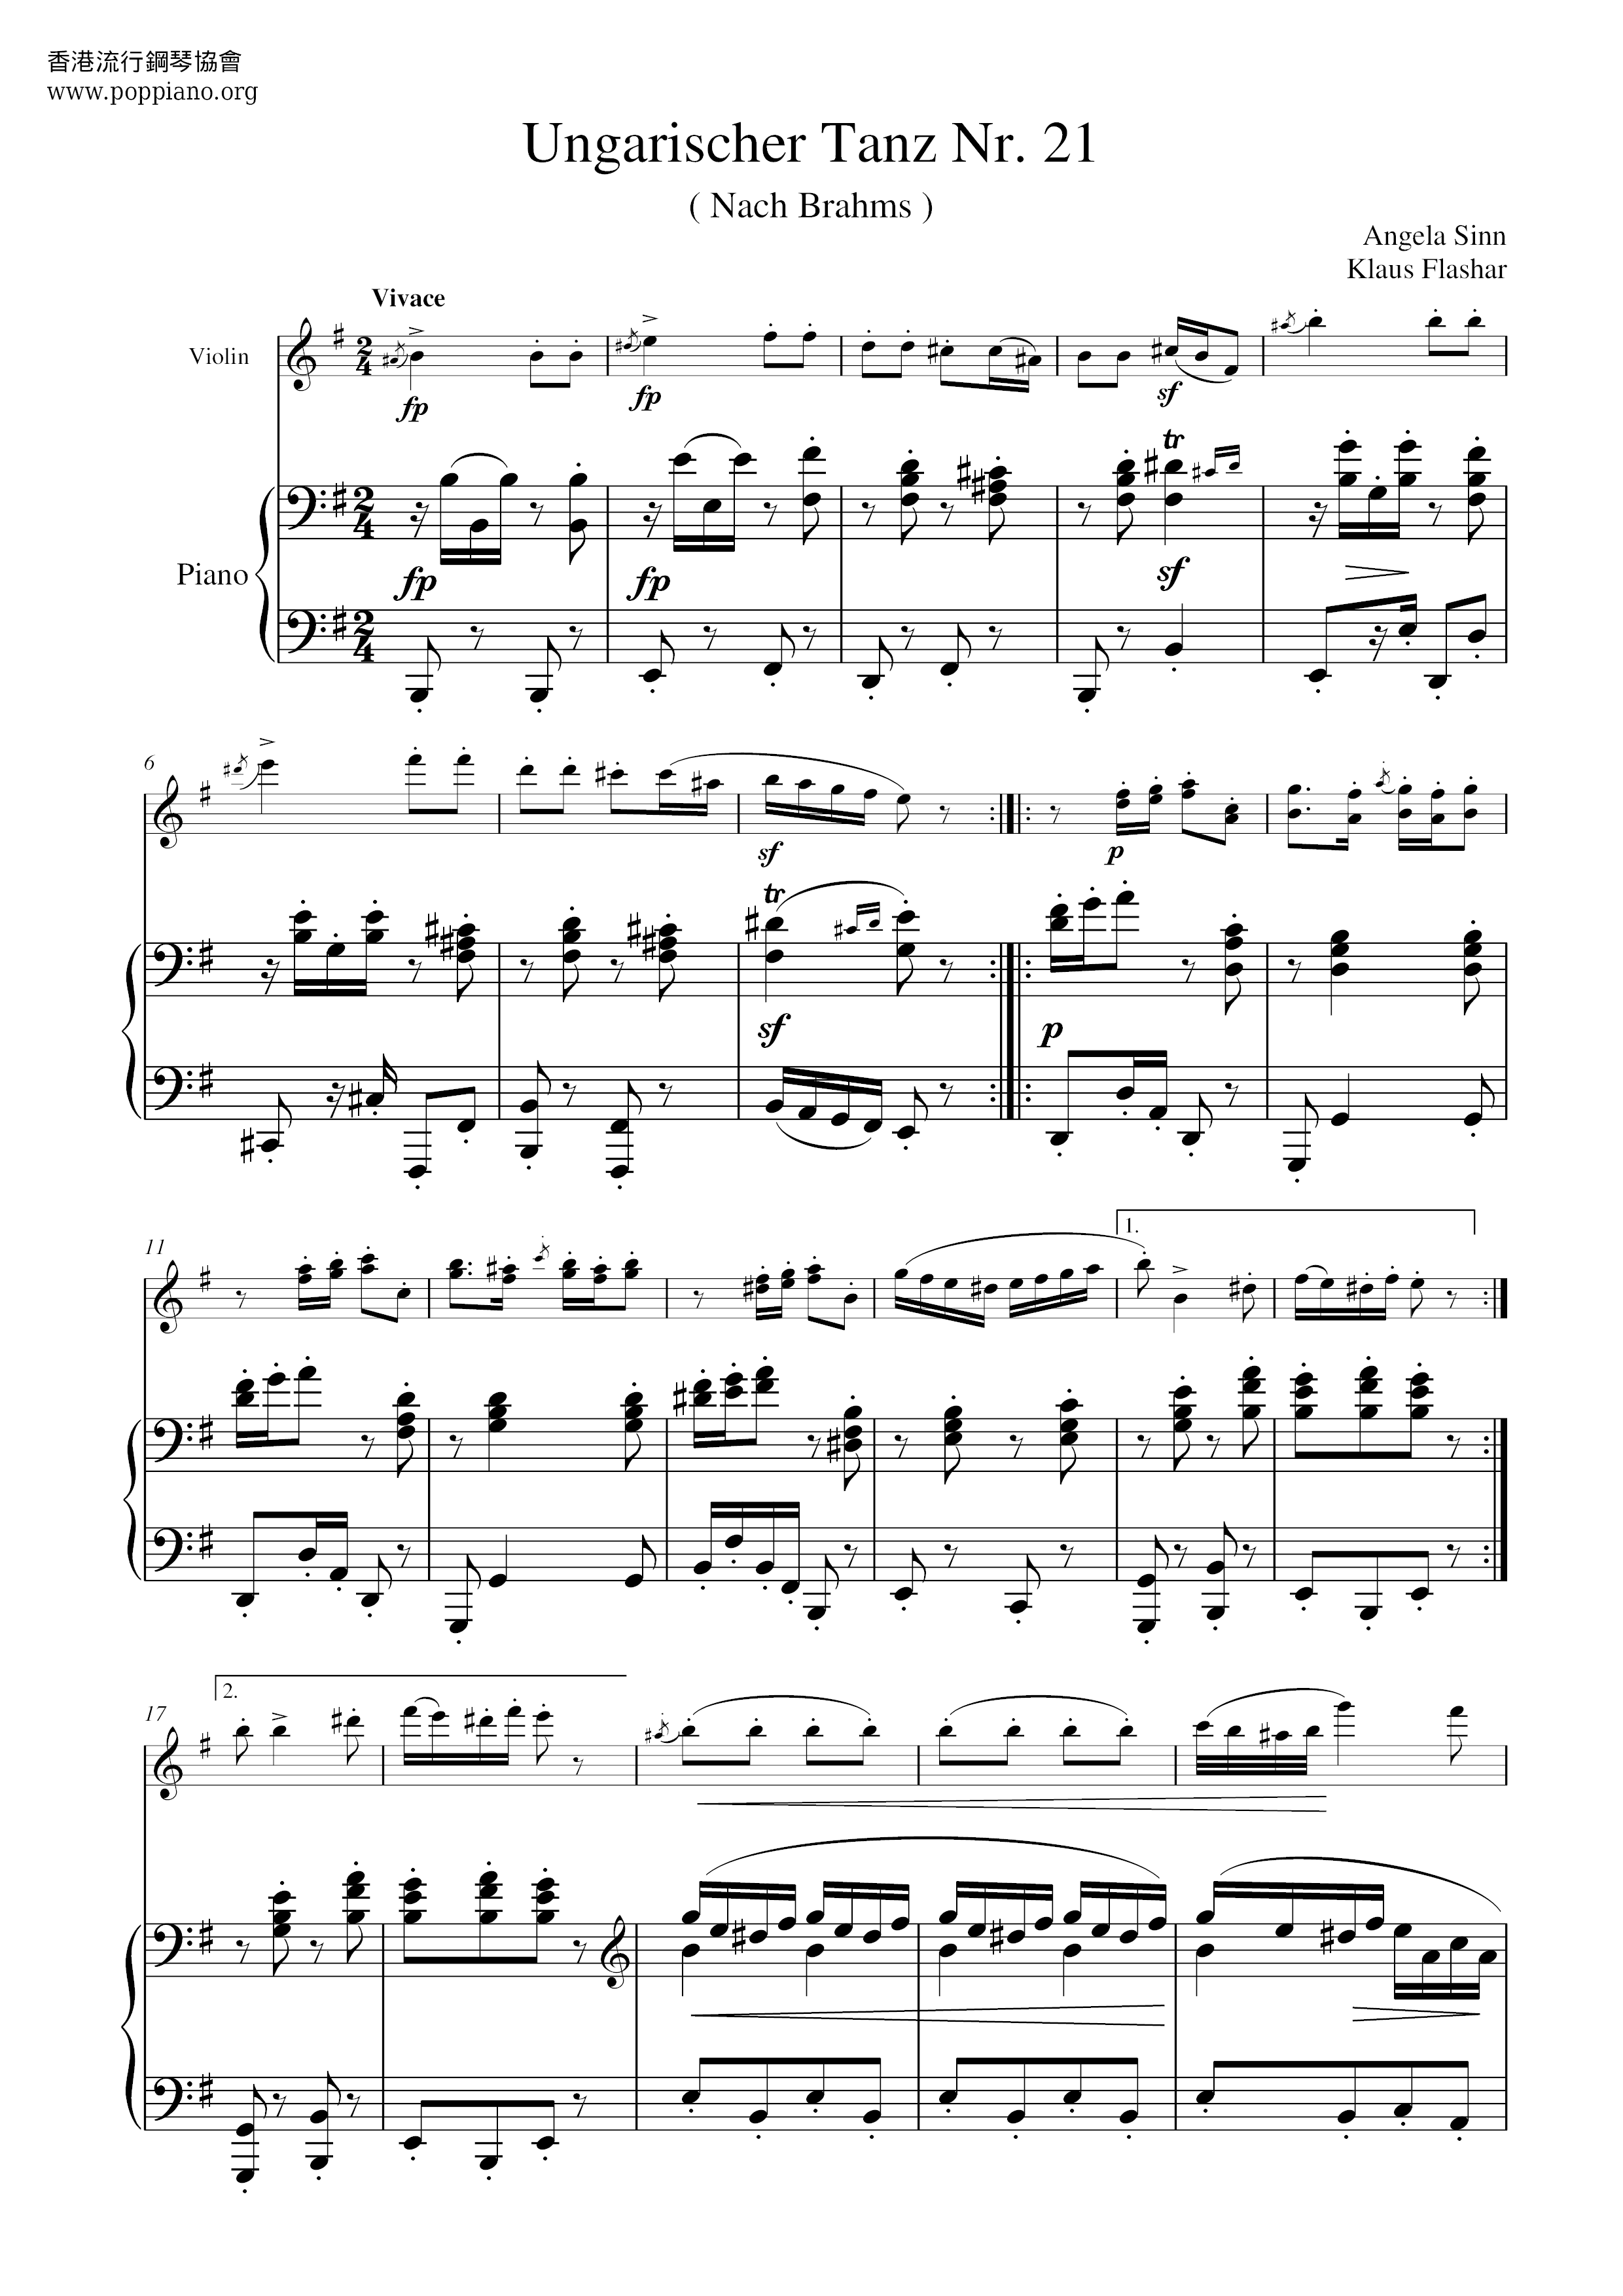 Ungarischer Tanz Nr.21 Score